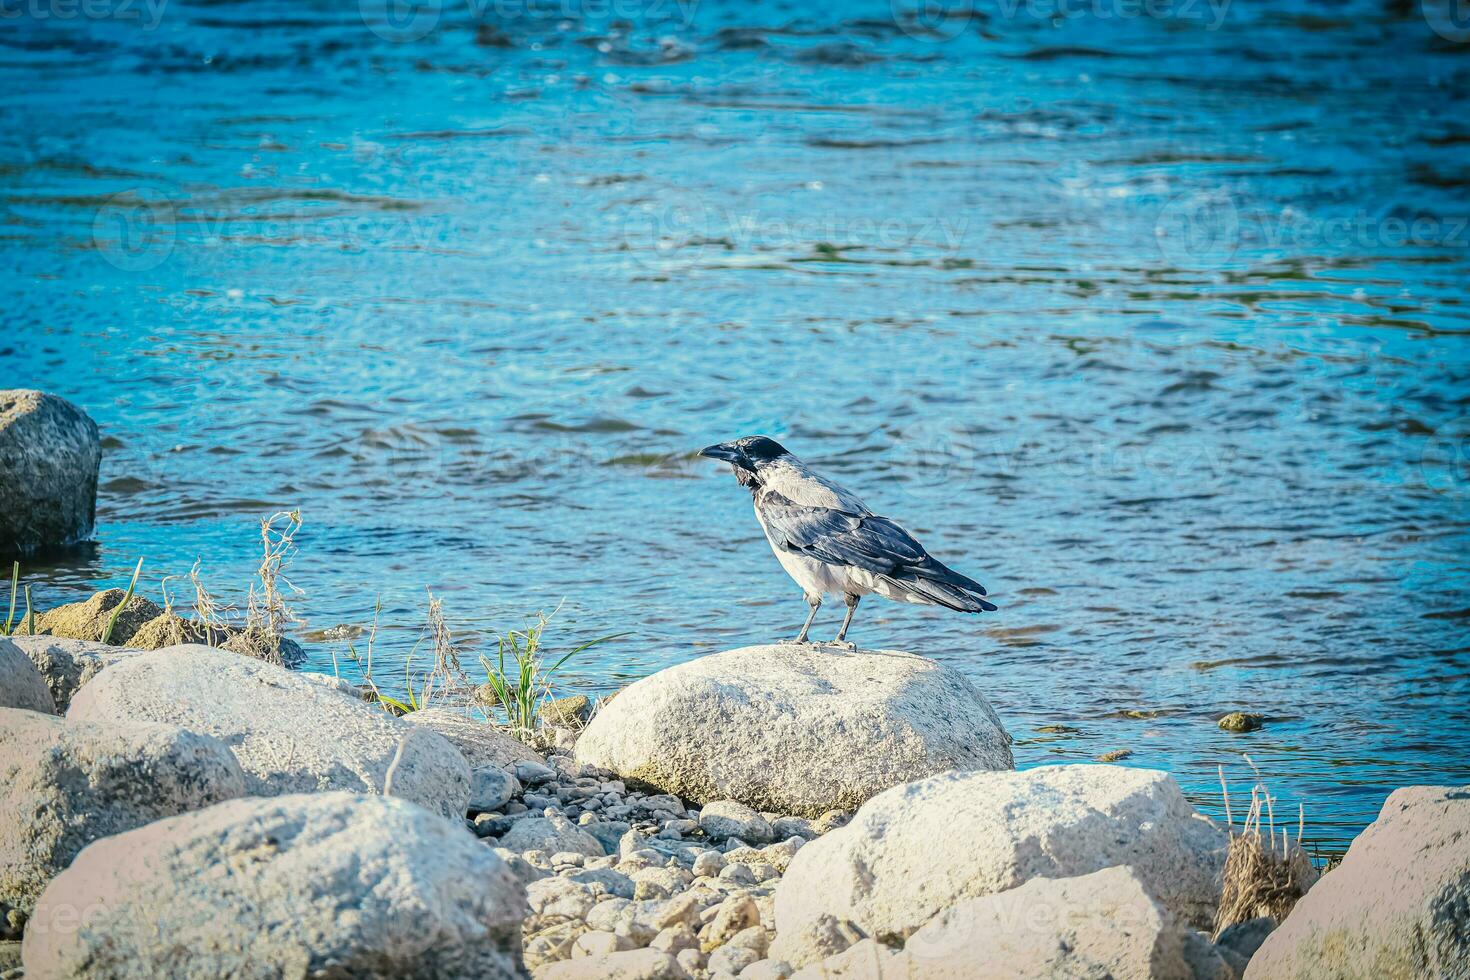 groß Krähe mit schwarz Schwanz Sitzung auf trocken Felsen in der Nähe von das Blau Fluss Wasser foto